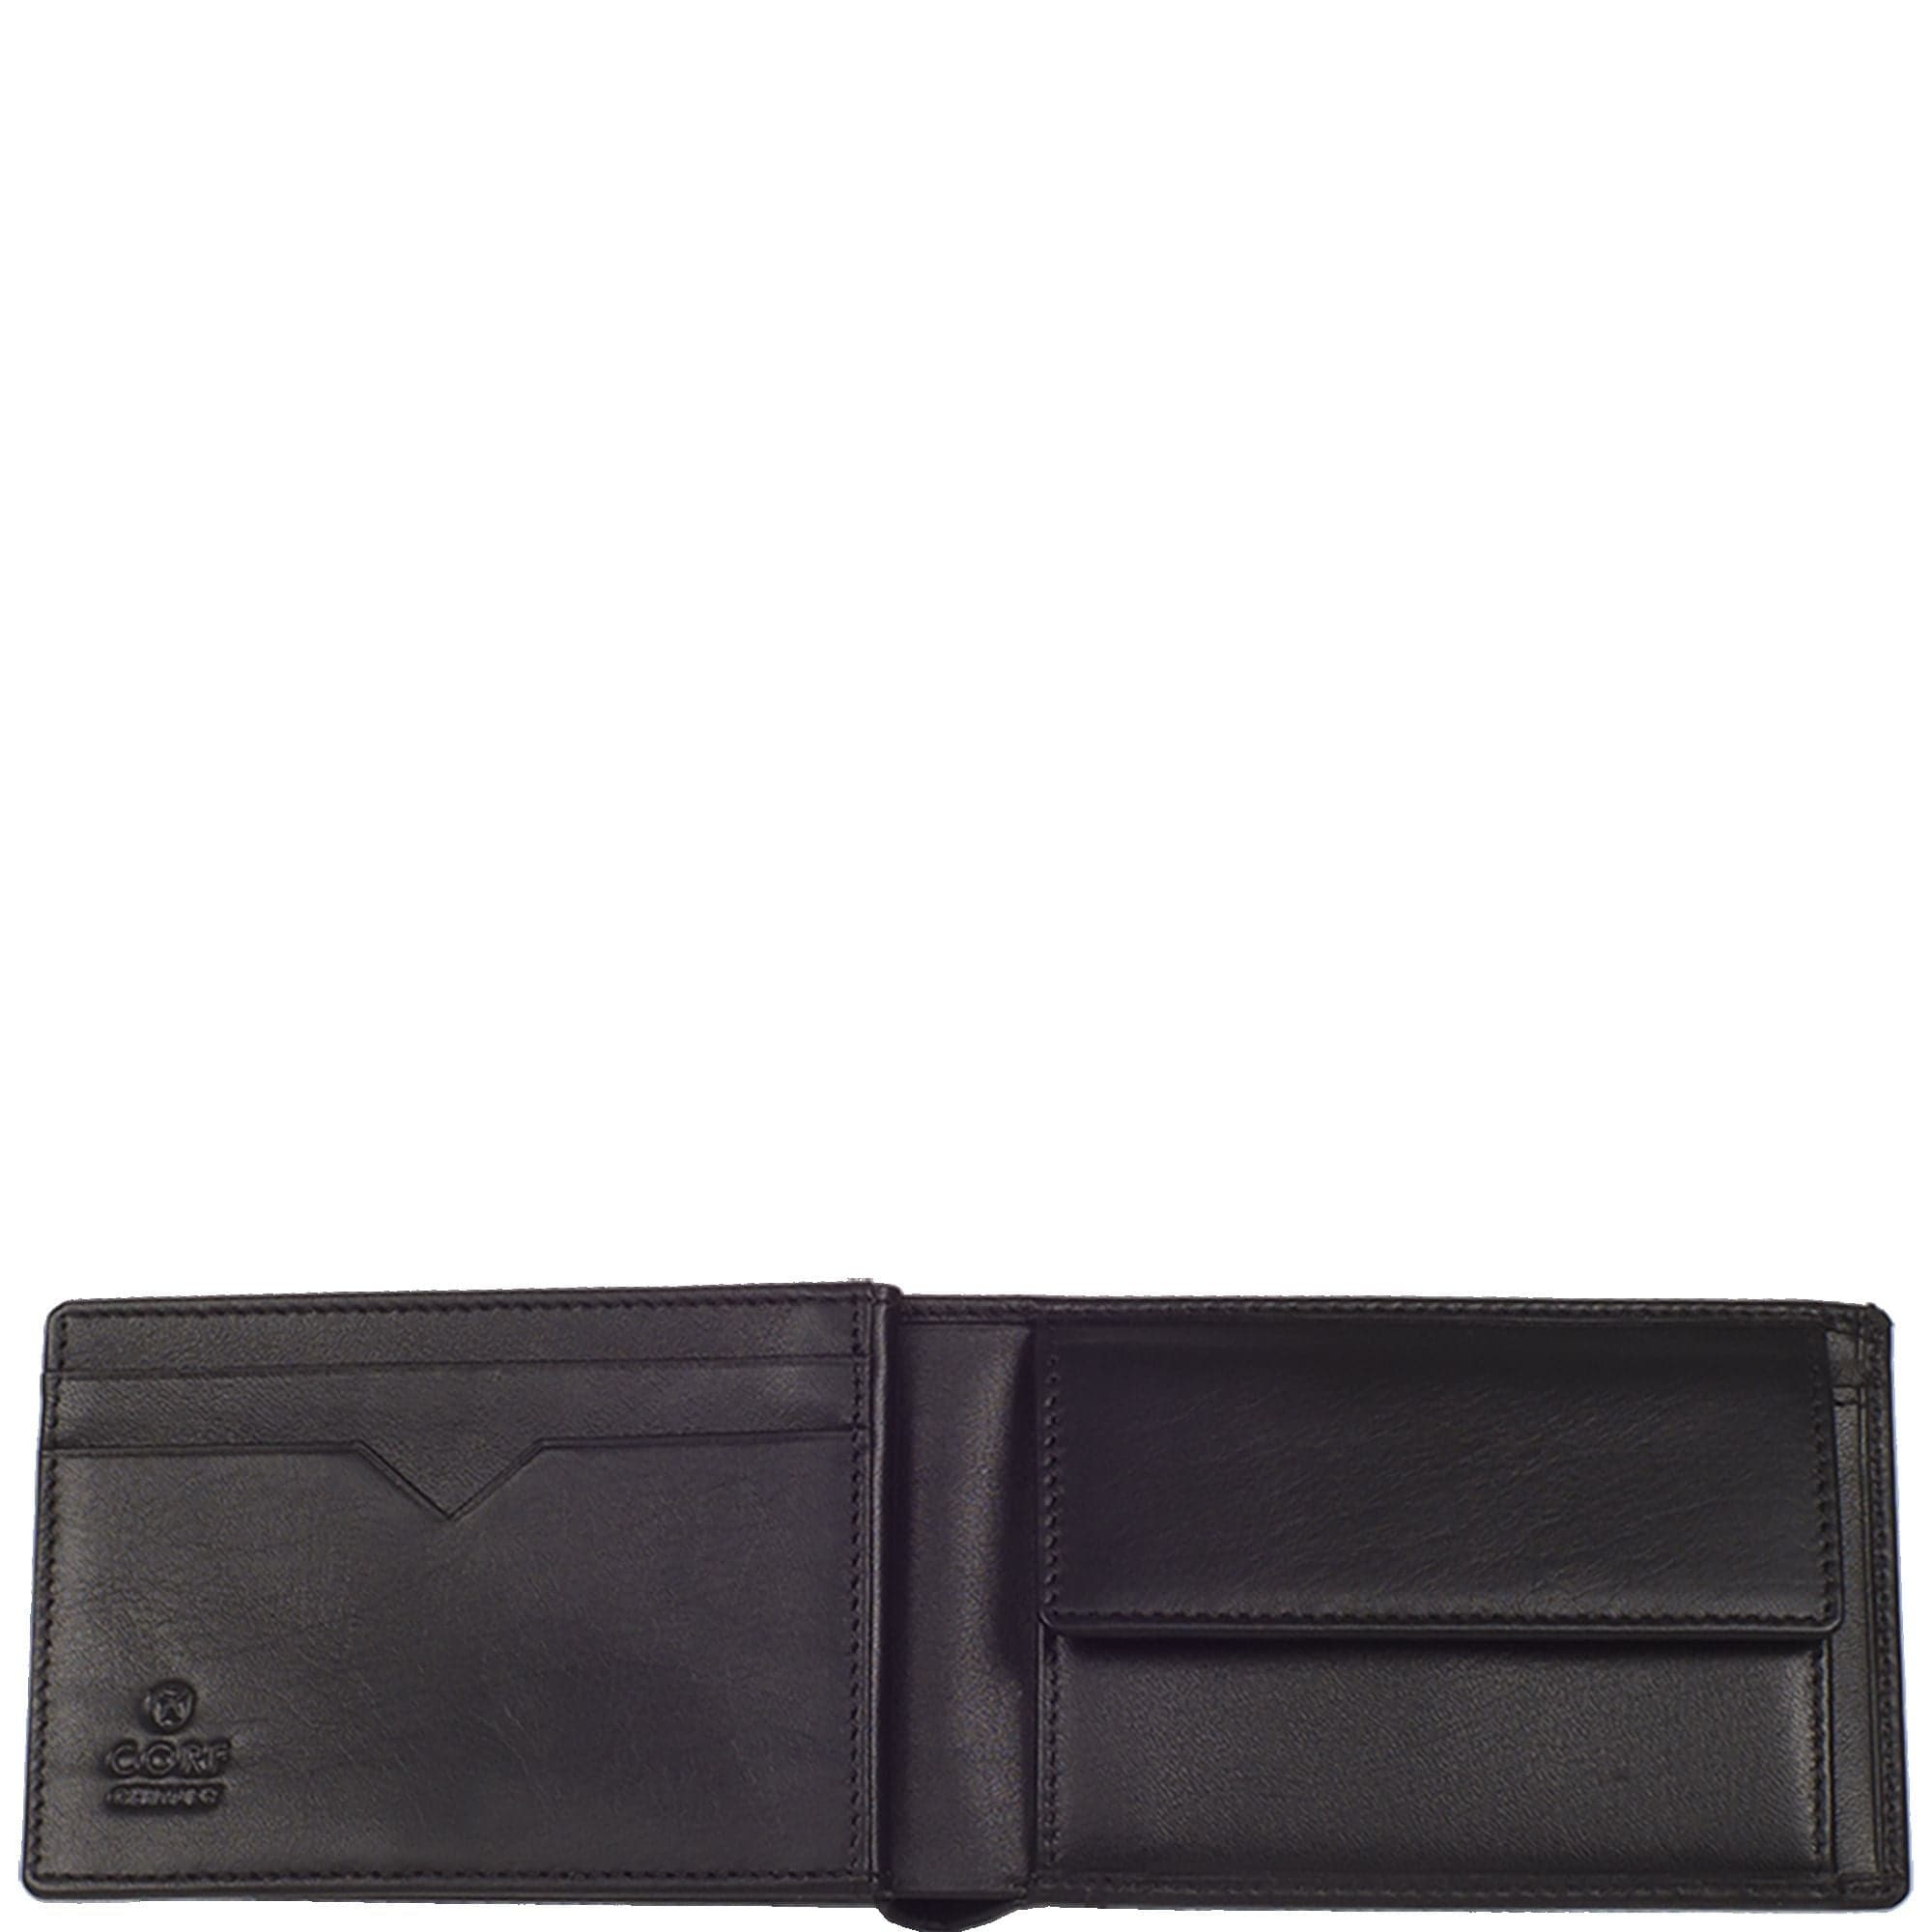 Geldbörse Portemonnaie klein Leder schwarz Miniformat